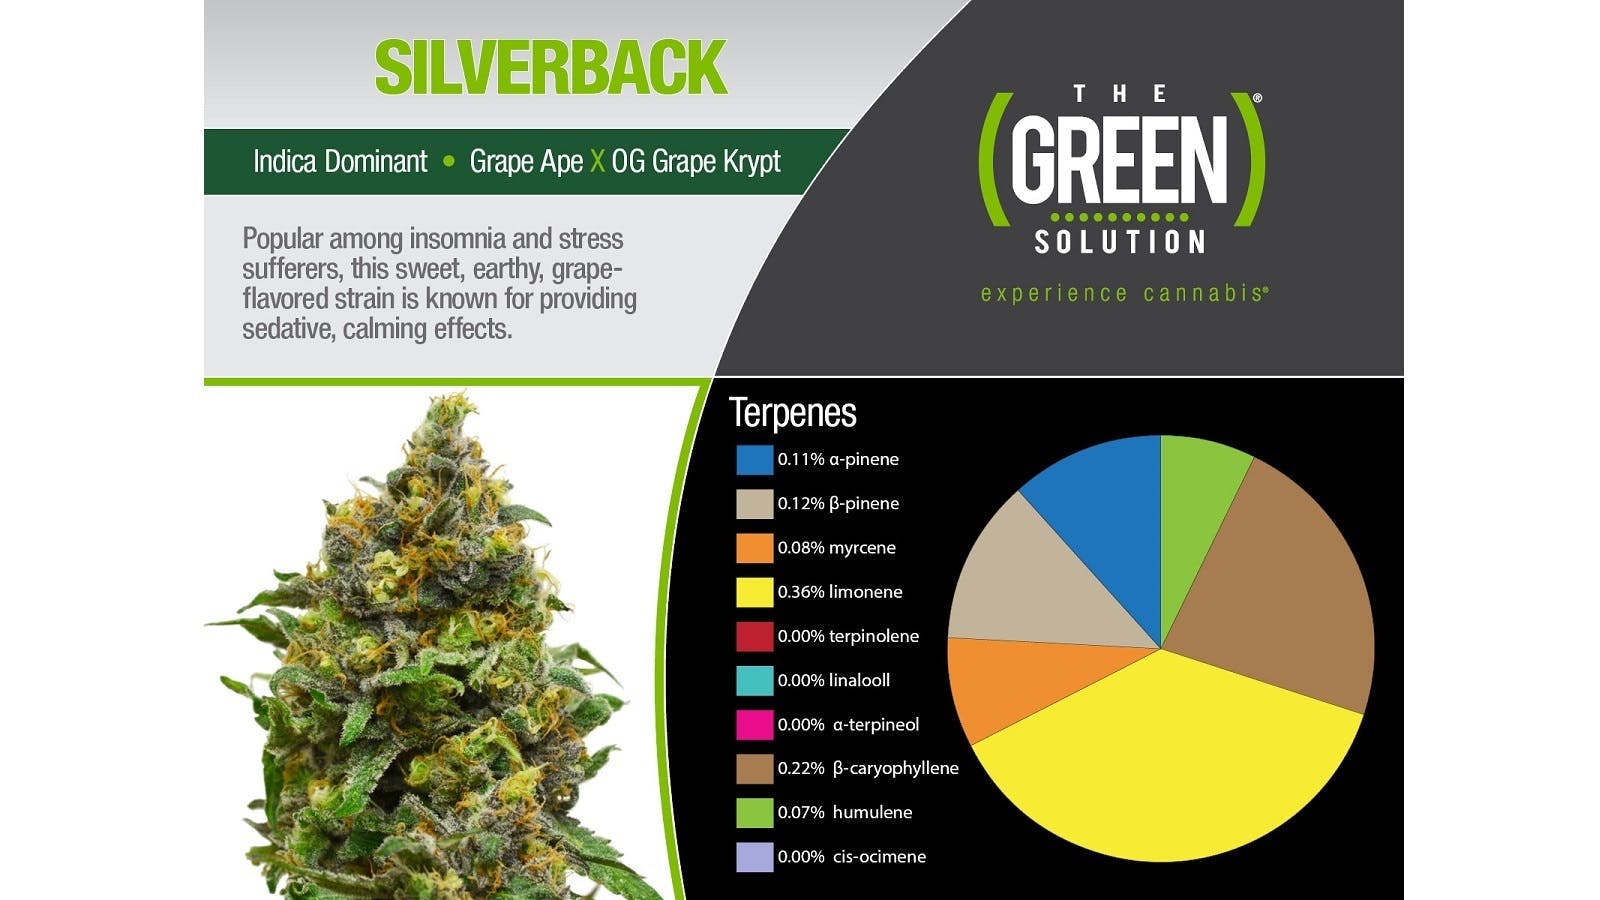 marijuana-dispensaries-the-green-solution-pueblo-in-pueblo-silverback